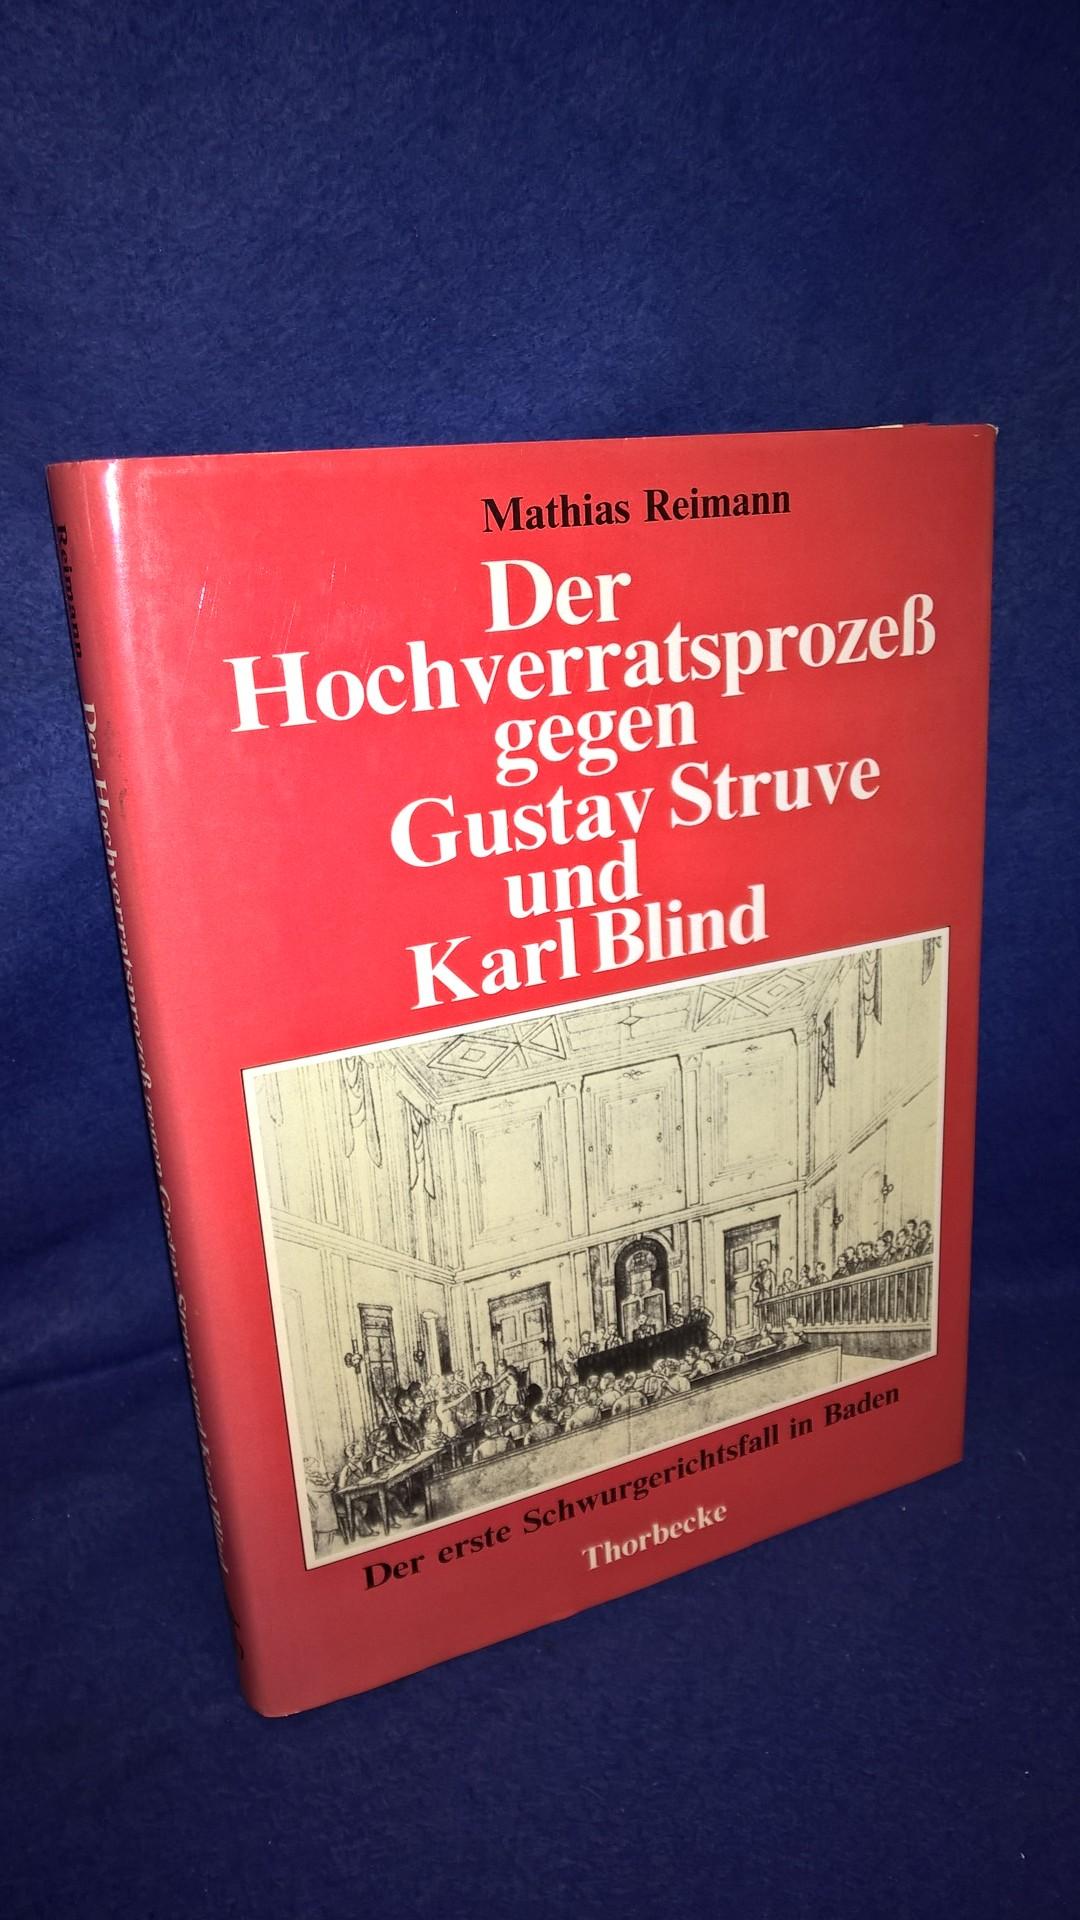 Der Hochverratsprozess gegen Gustav Struve und Karl Blind. Der erste Schwurgerichtsfall in Baden.